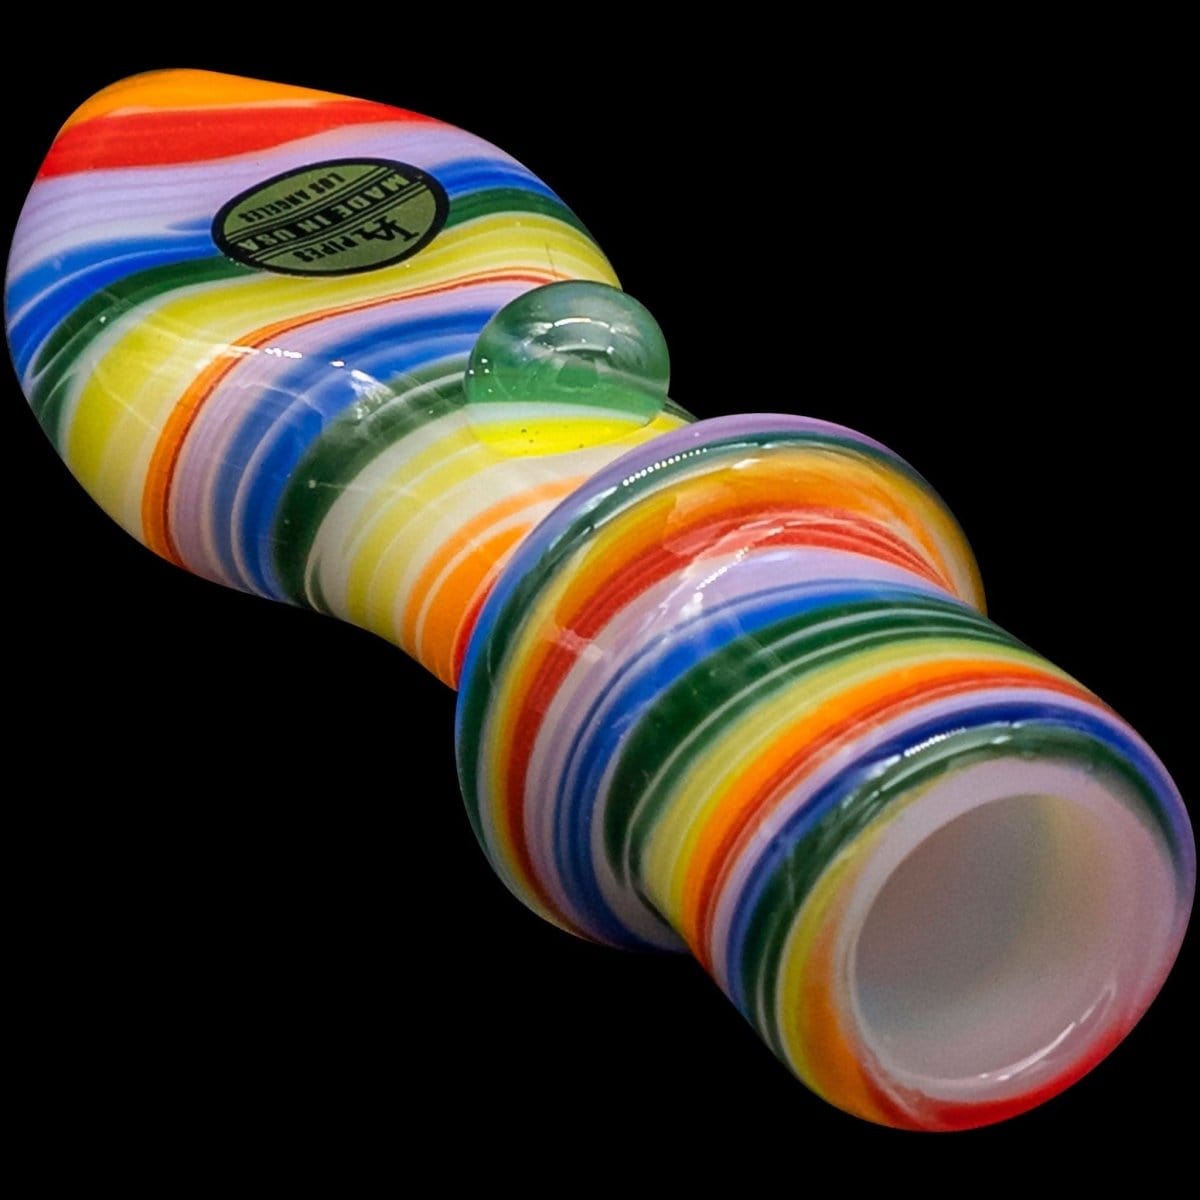 LA Pipes Hand Pipe "Rainbow Tornado" Chillum Pipe